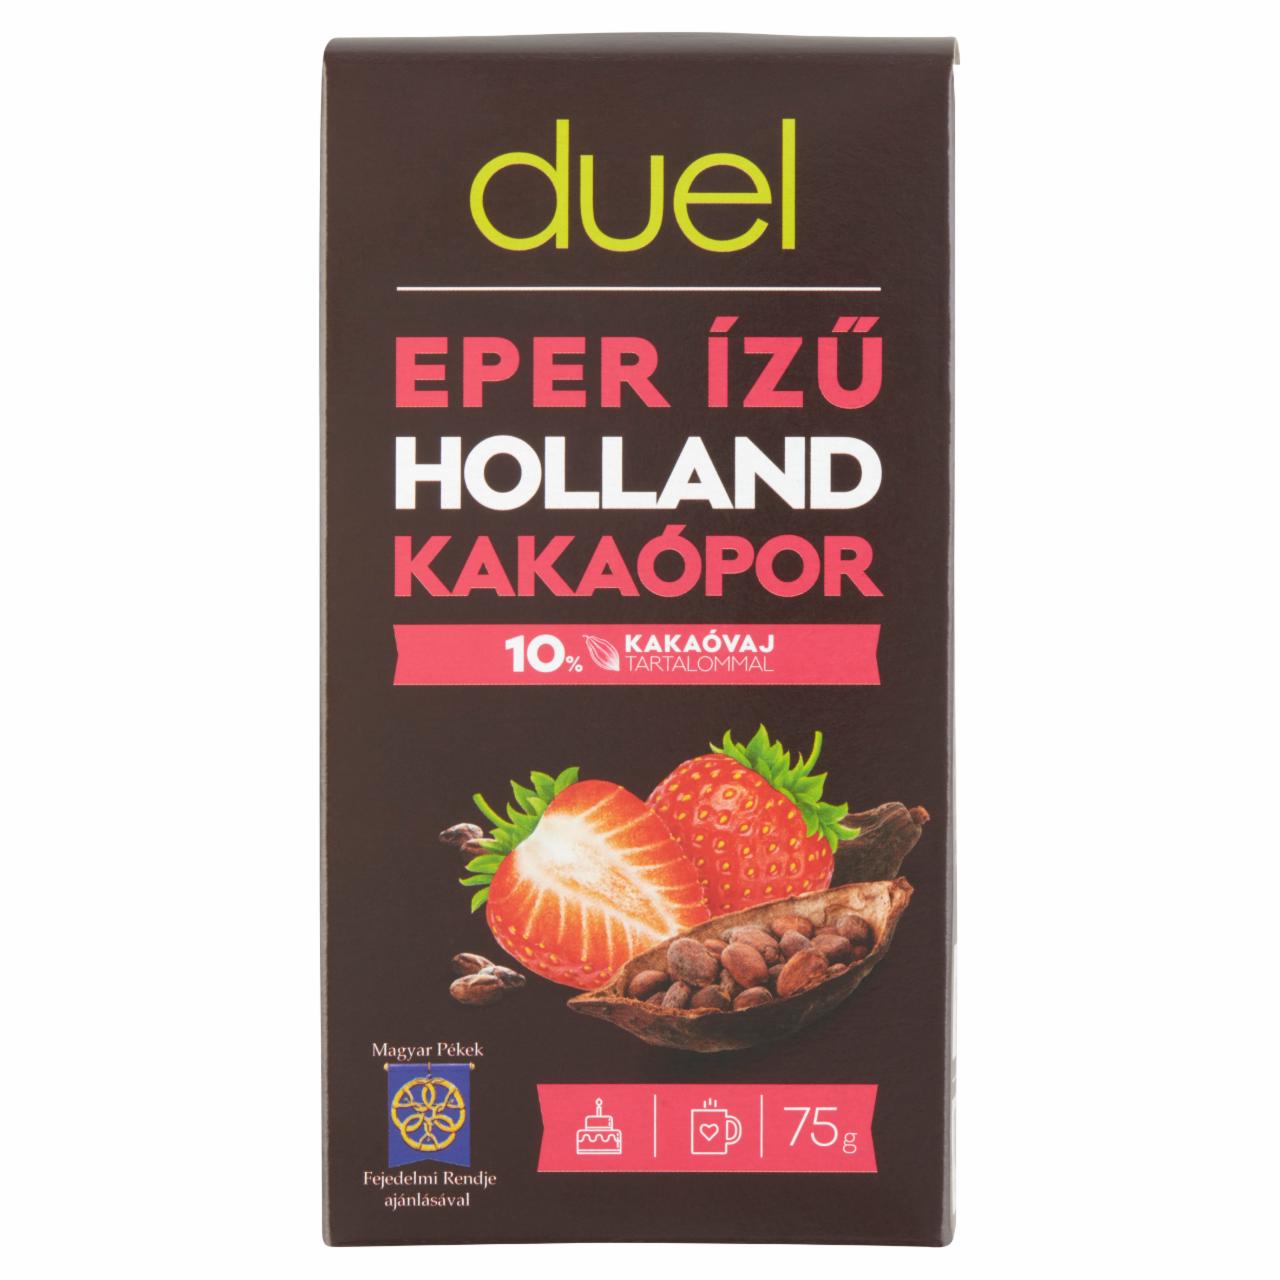 Képek - Duel eper ízű zsírszegény holland kakaópor 75 g